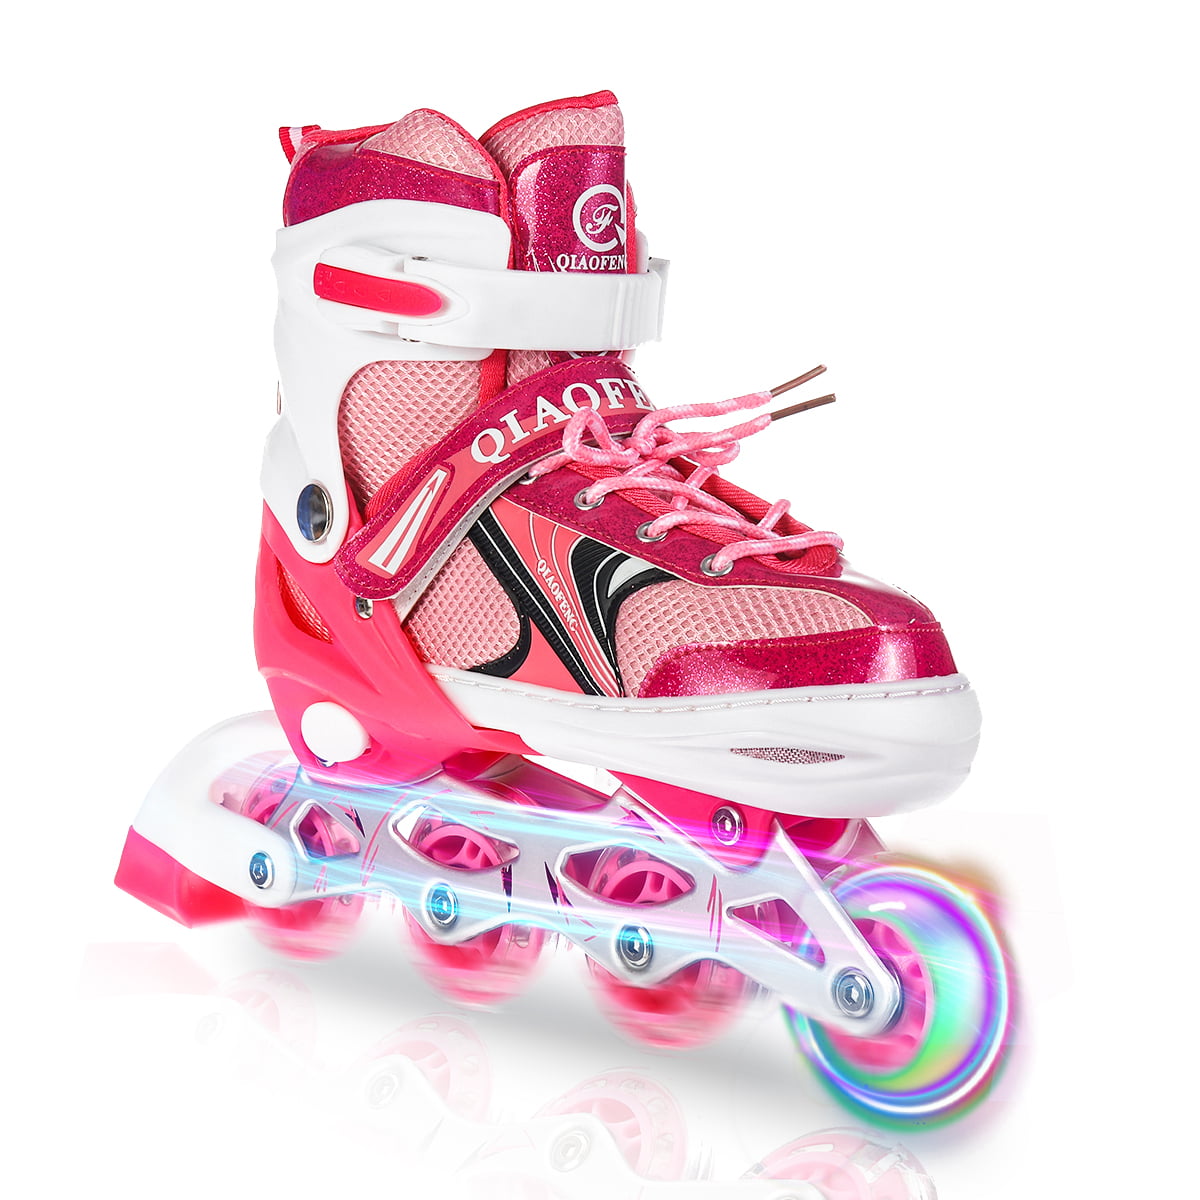 Details about   Adjustable Inline Skates Roller Blades Adult Size 8-10.5 Breathable Adult b 208 